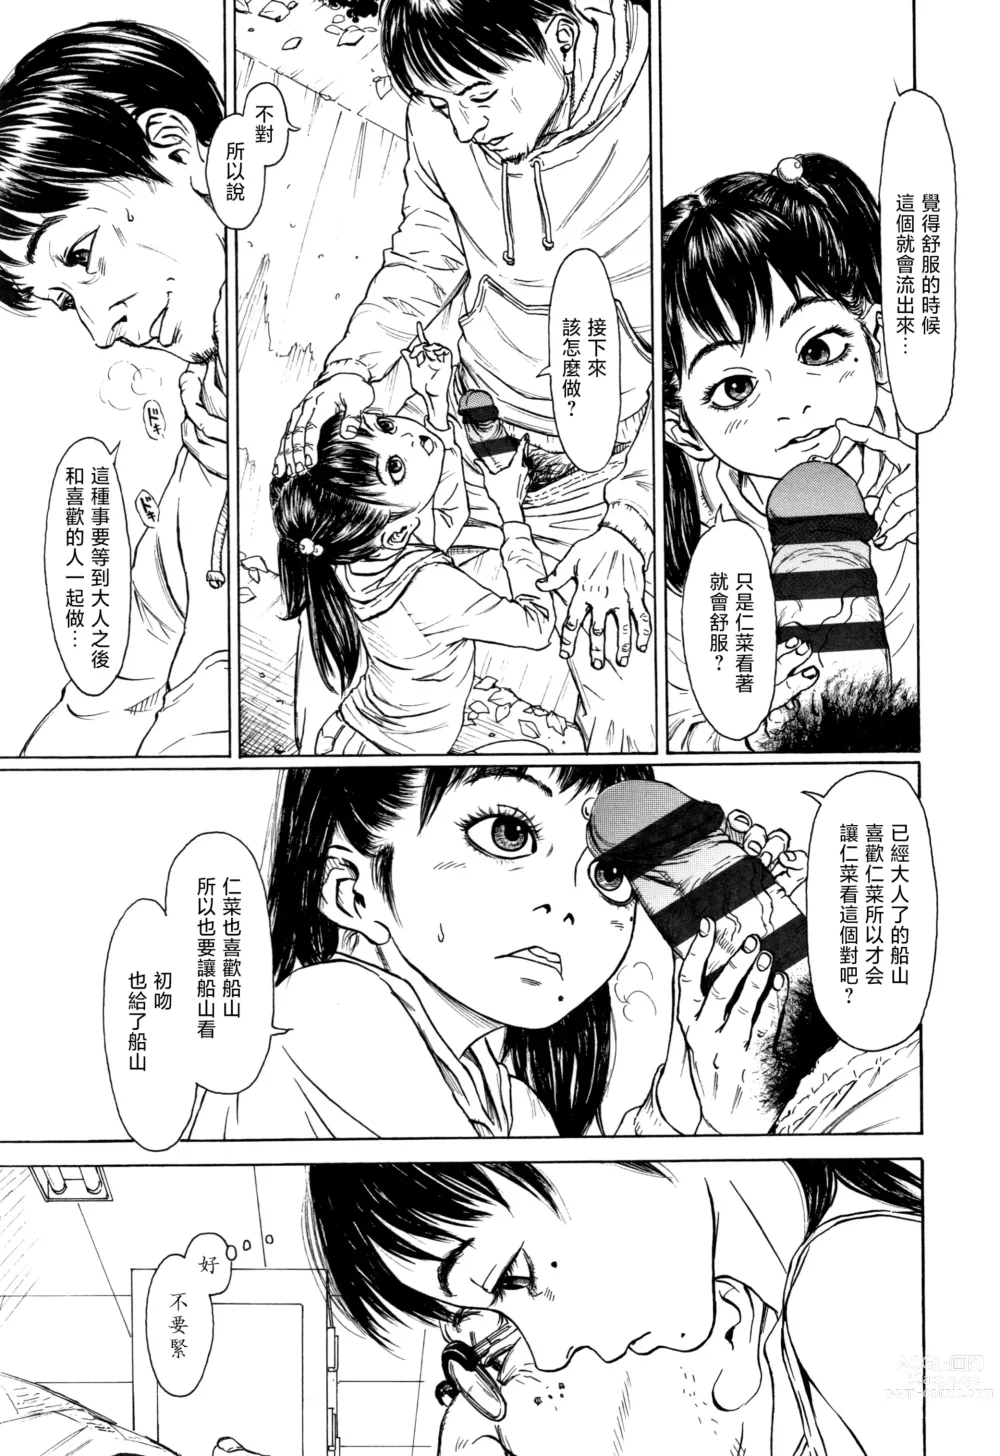 Page 3 of manga Zasikirou no Yurikago